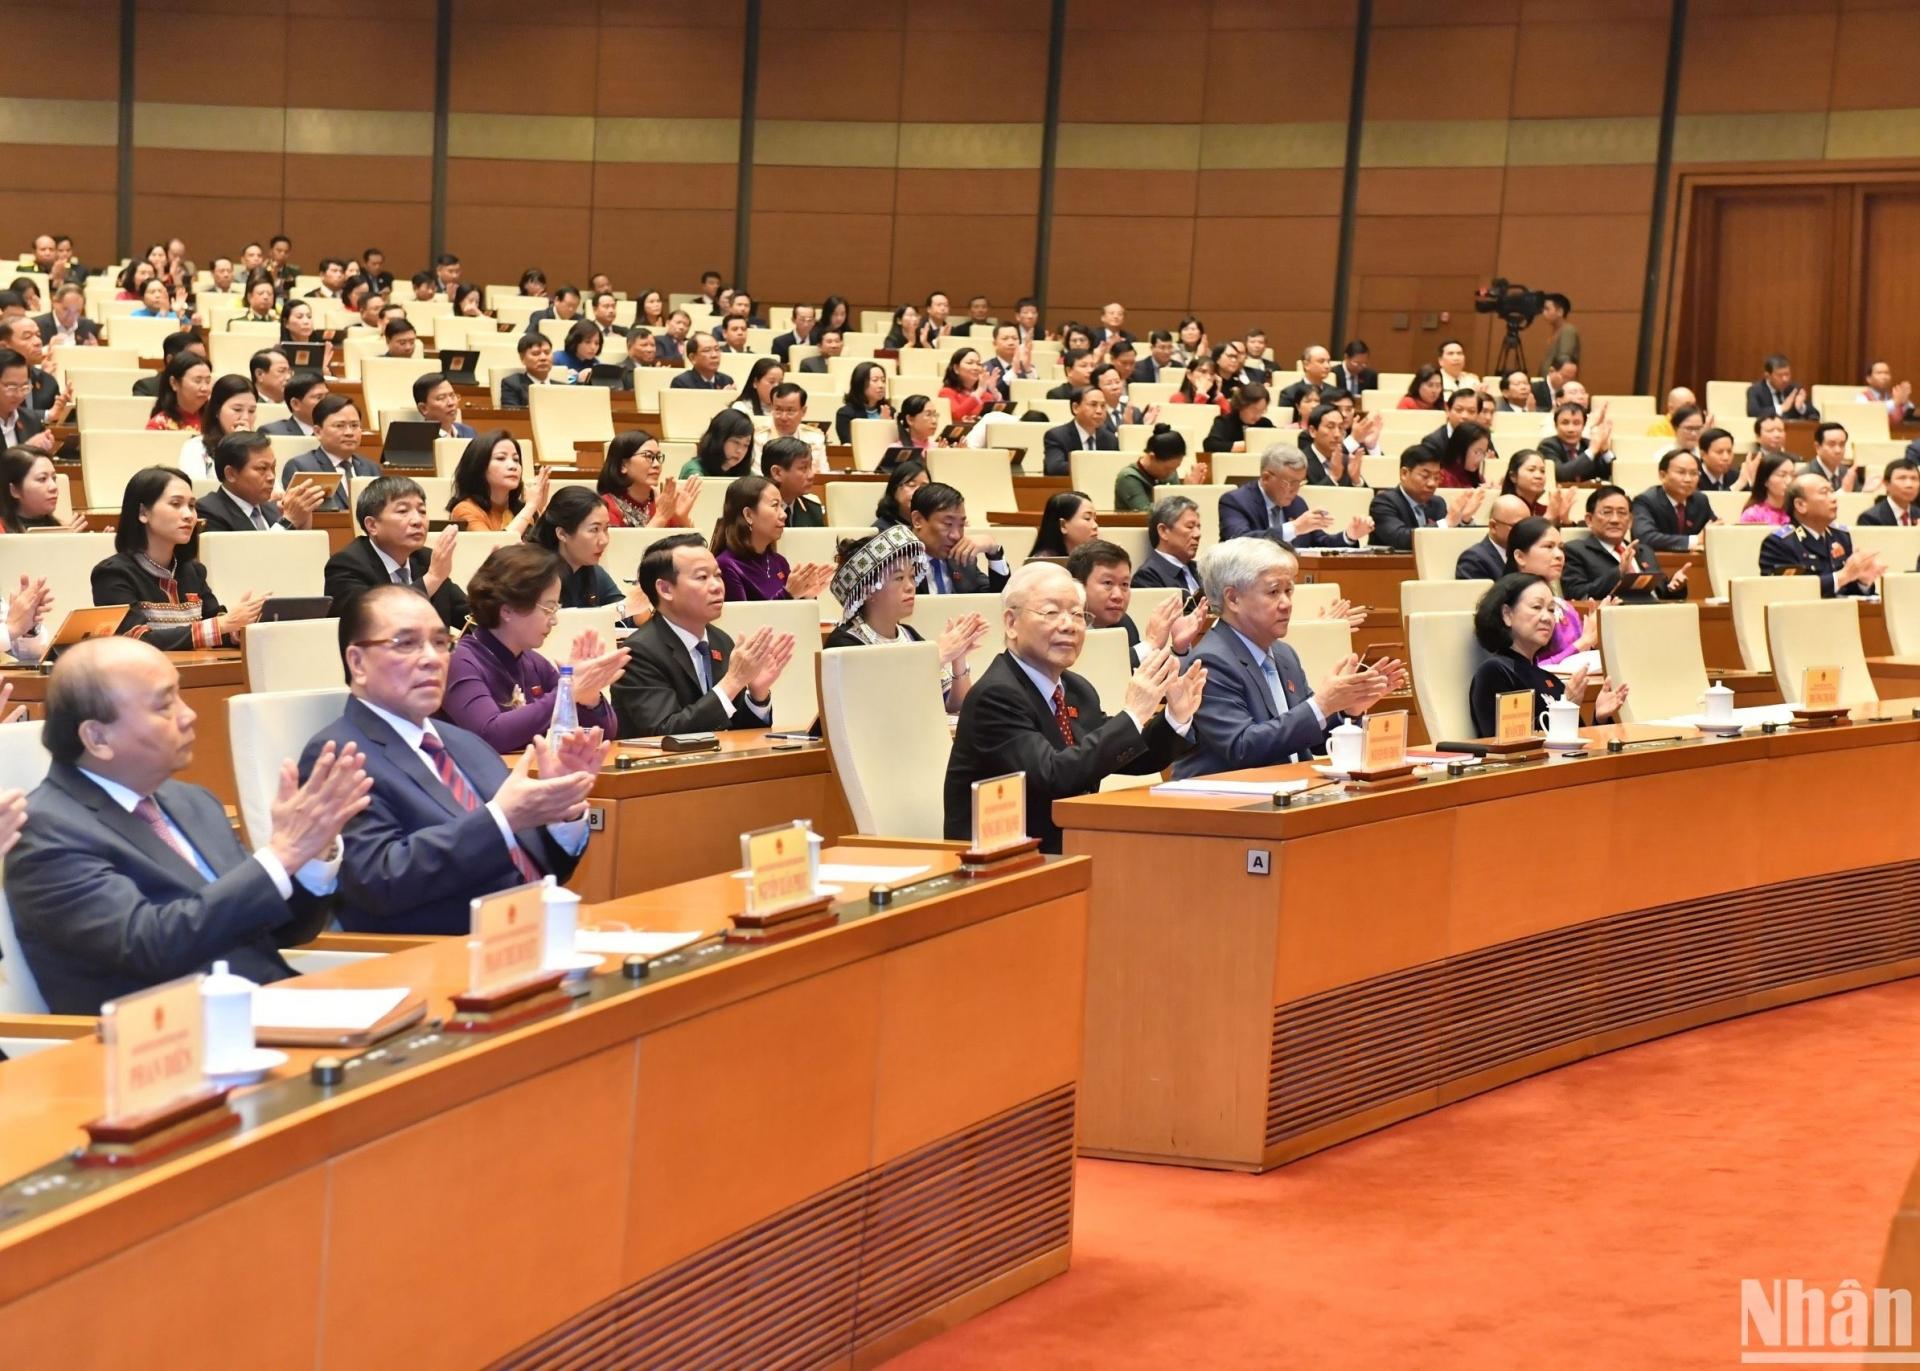 Các đồng chí lãnh đạo, nguyên lãnh đạo Đảng, Nhà nước và các đại biểu Quốc hội dự phiên bế mạc. (Ảnh: ĐĂNG KHOA)